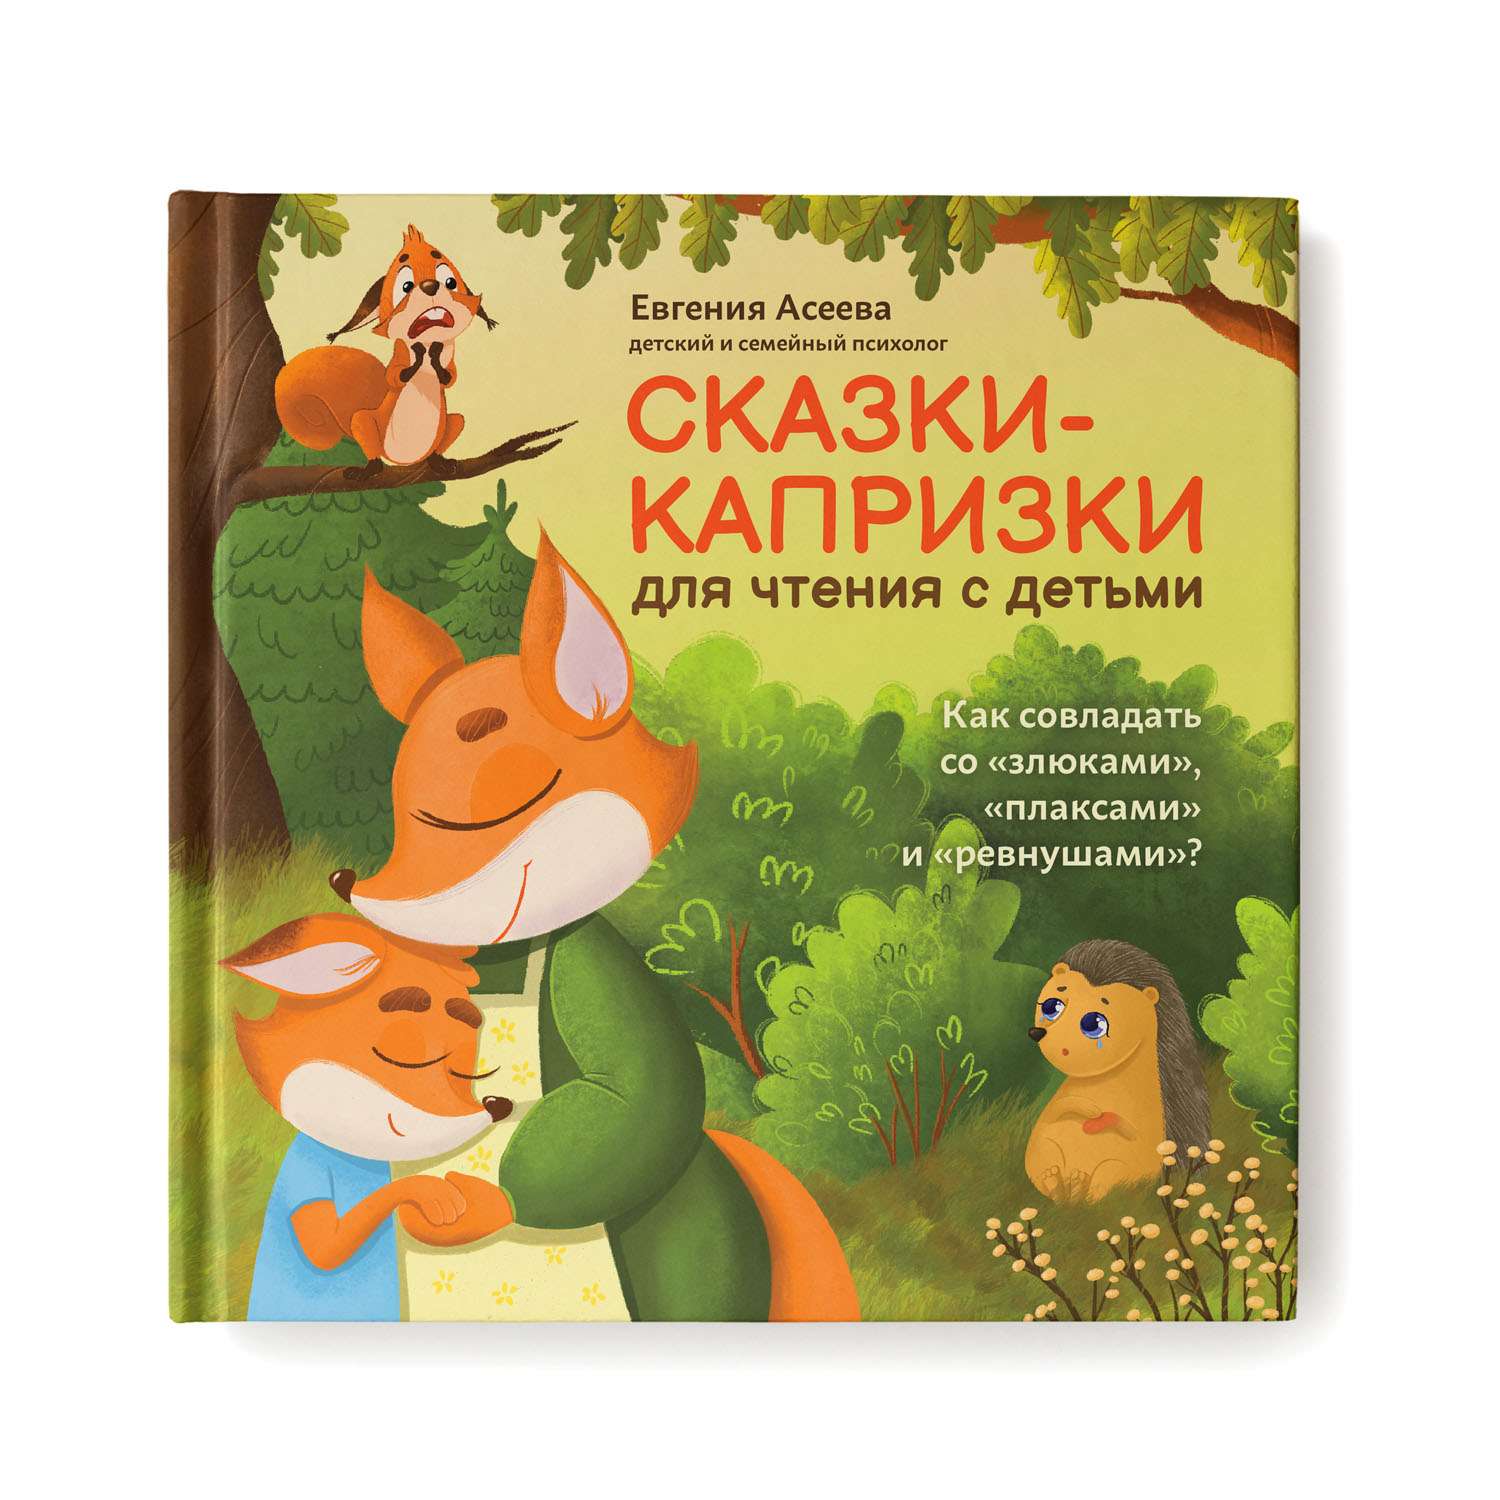 Книга Феникс Сказки-капризки для чтения с детьми. Как совладать со злюками плаксами и ревнушами - фото 1